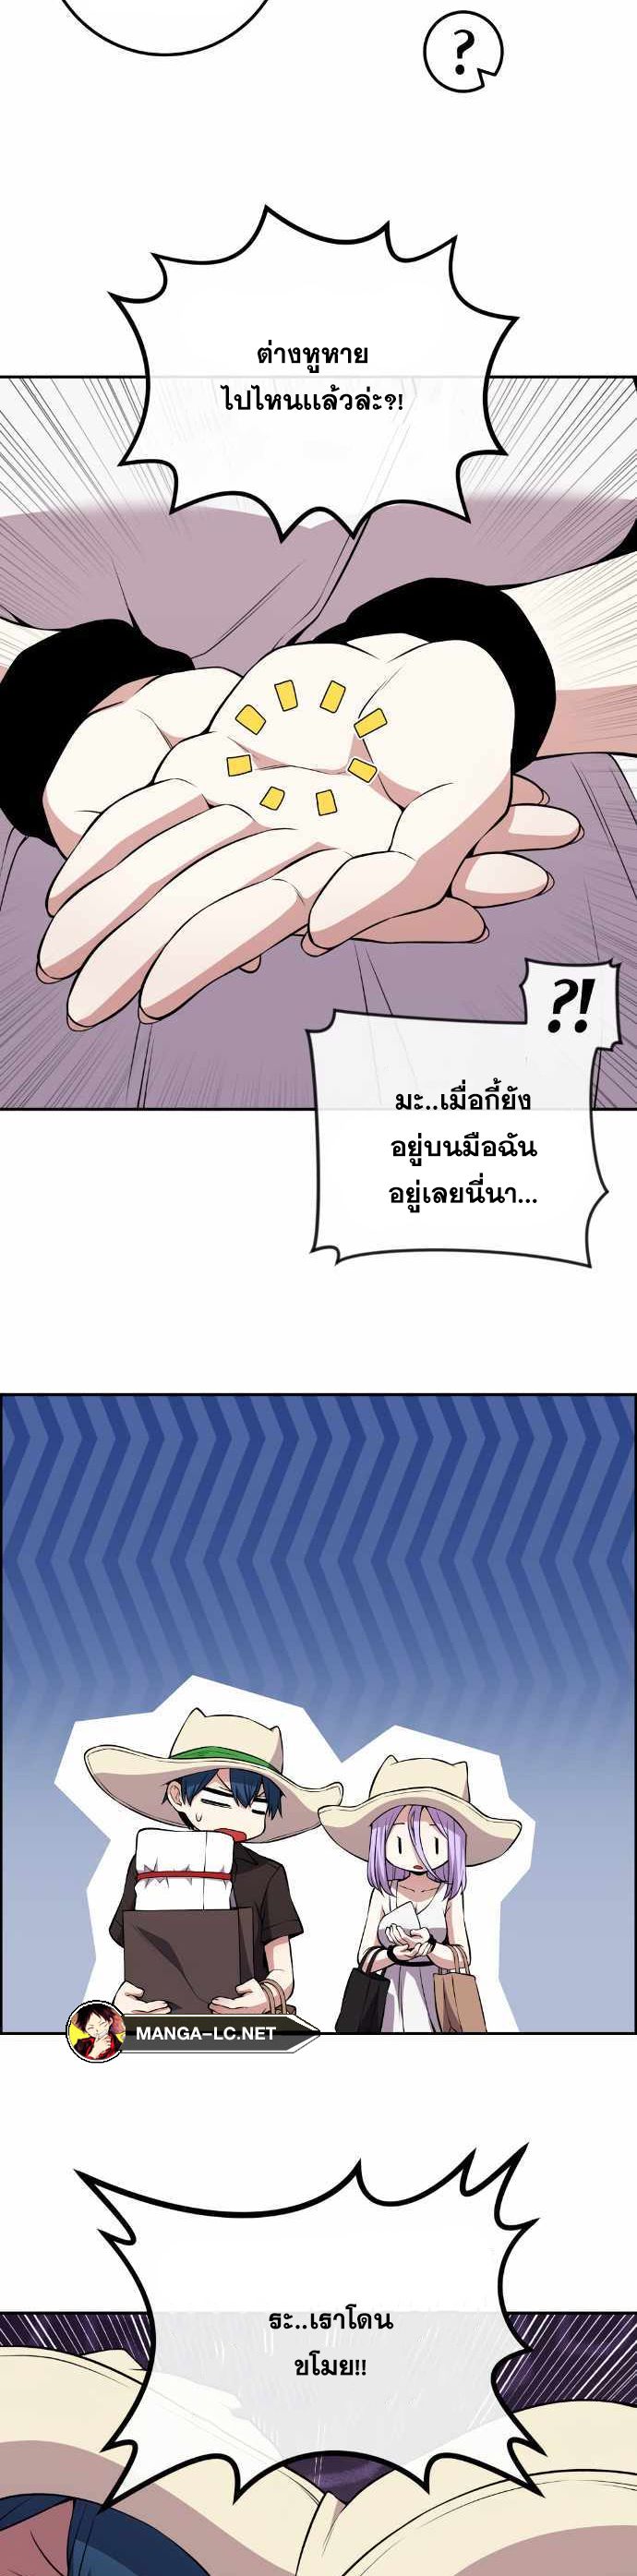 Webtoon Character Na Kang Lim ตอนที่ 123 (6)